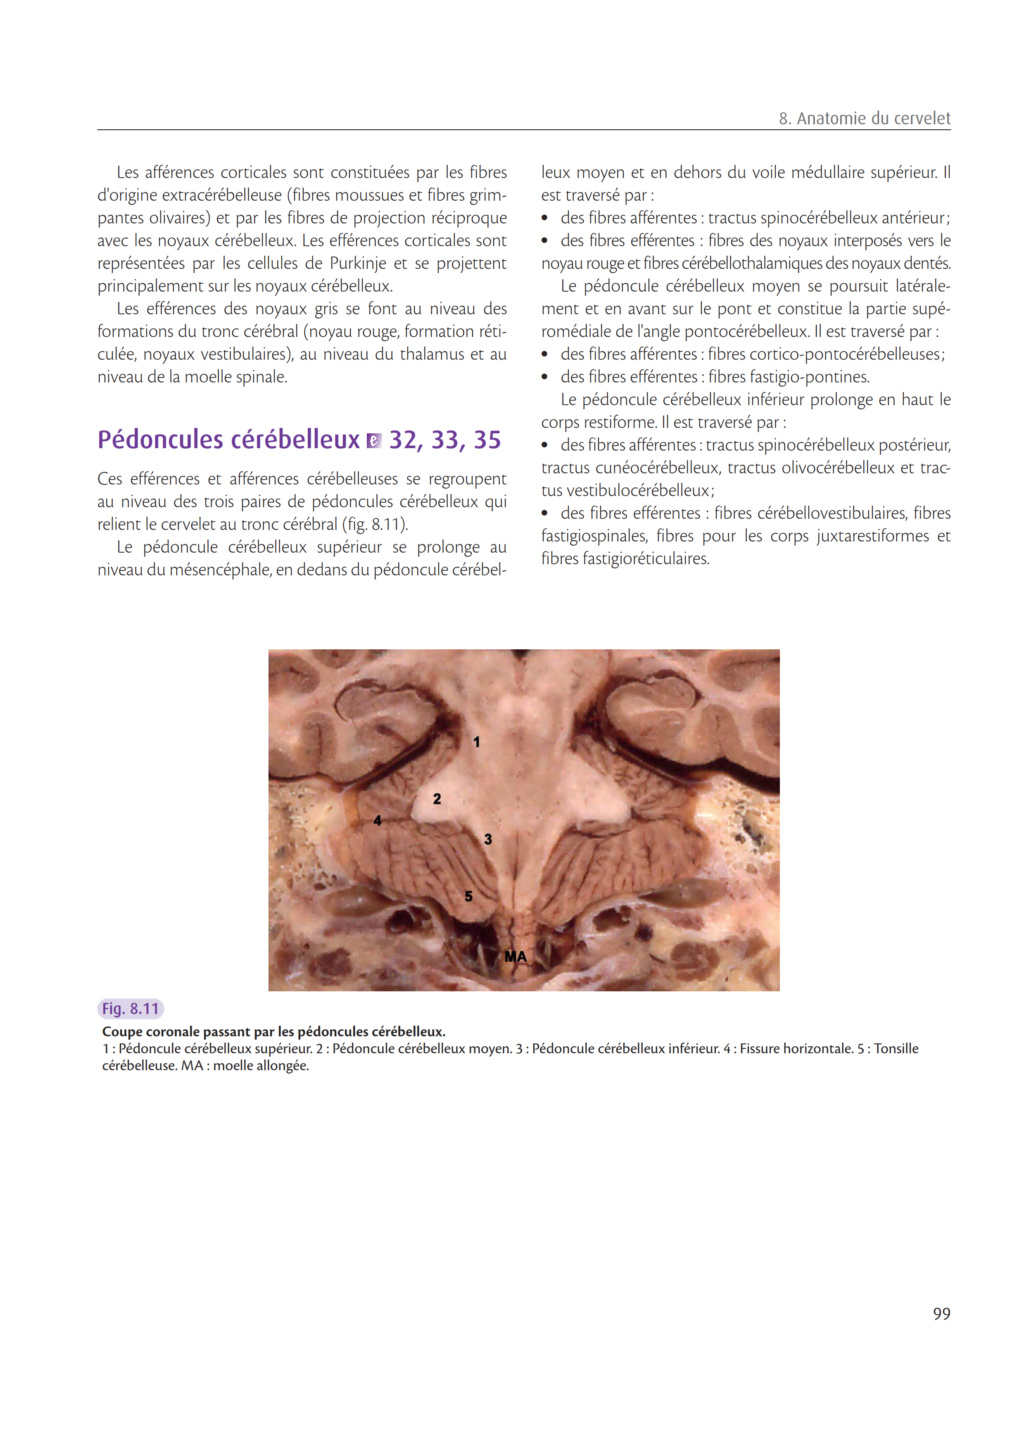 NeuroAnatomie Clinique: Cervelet Thines17